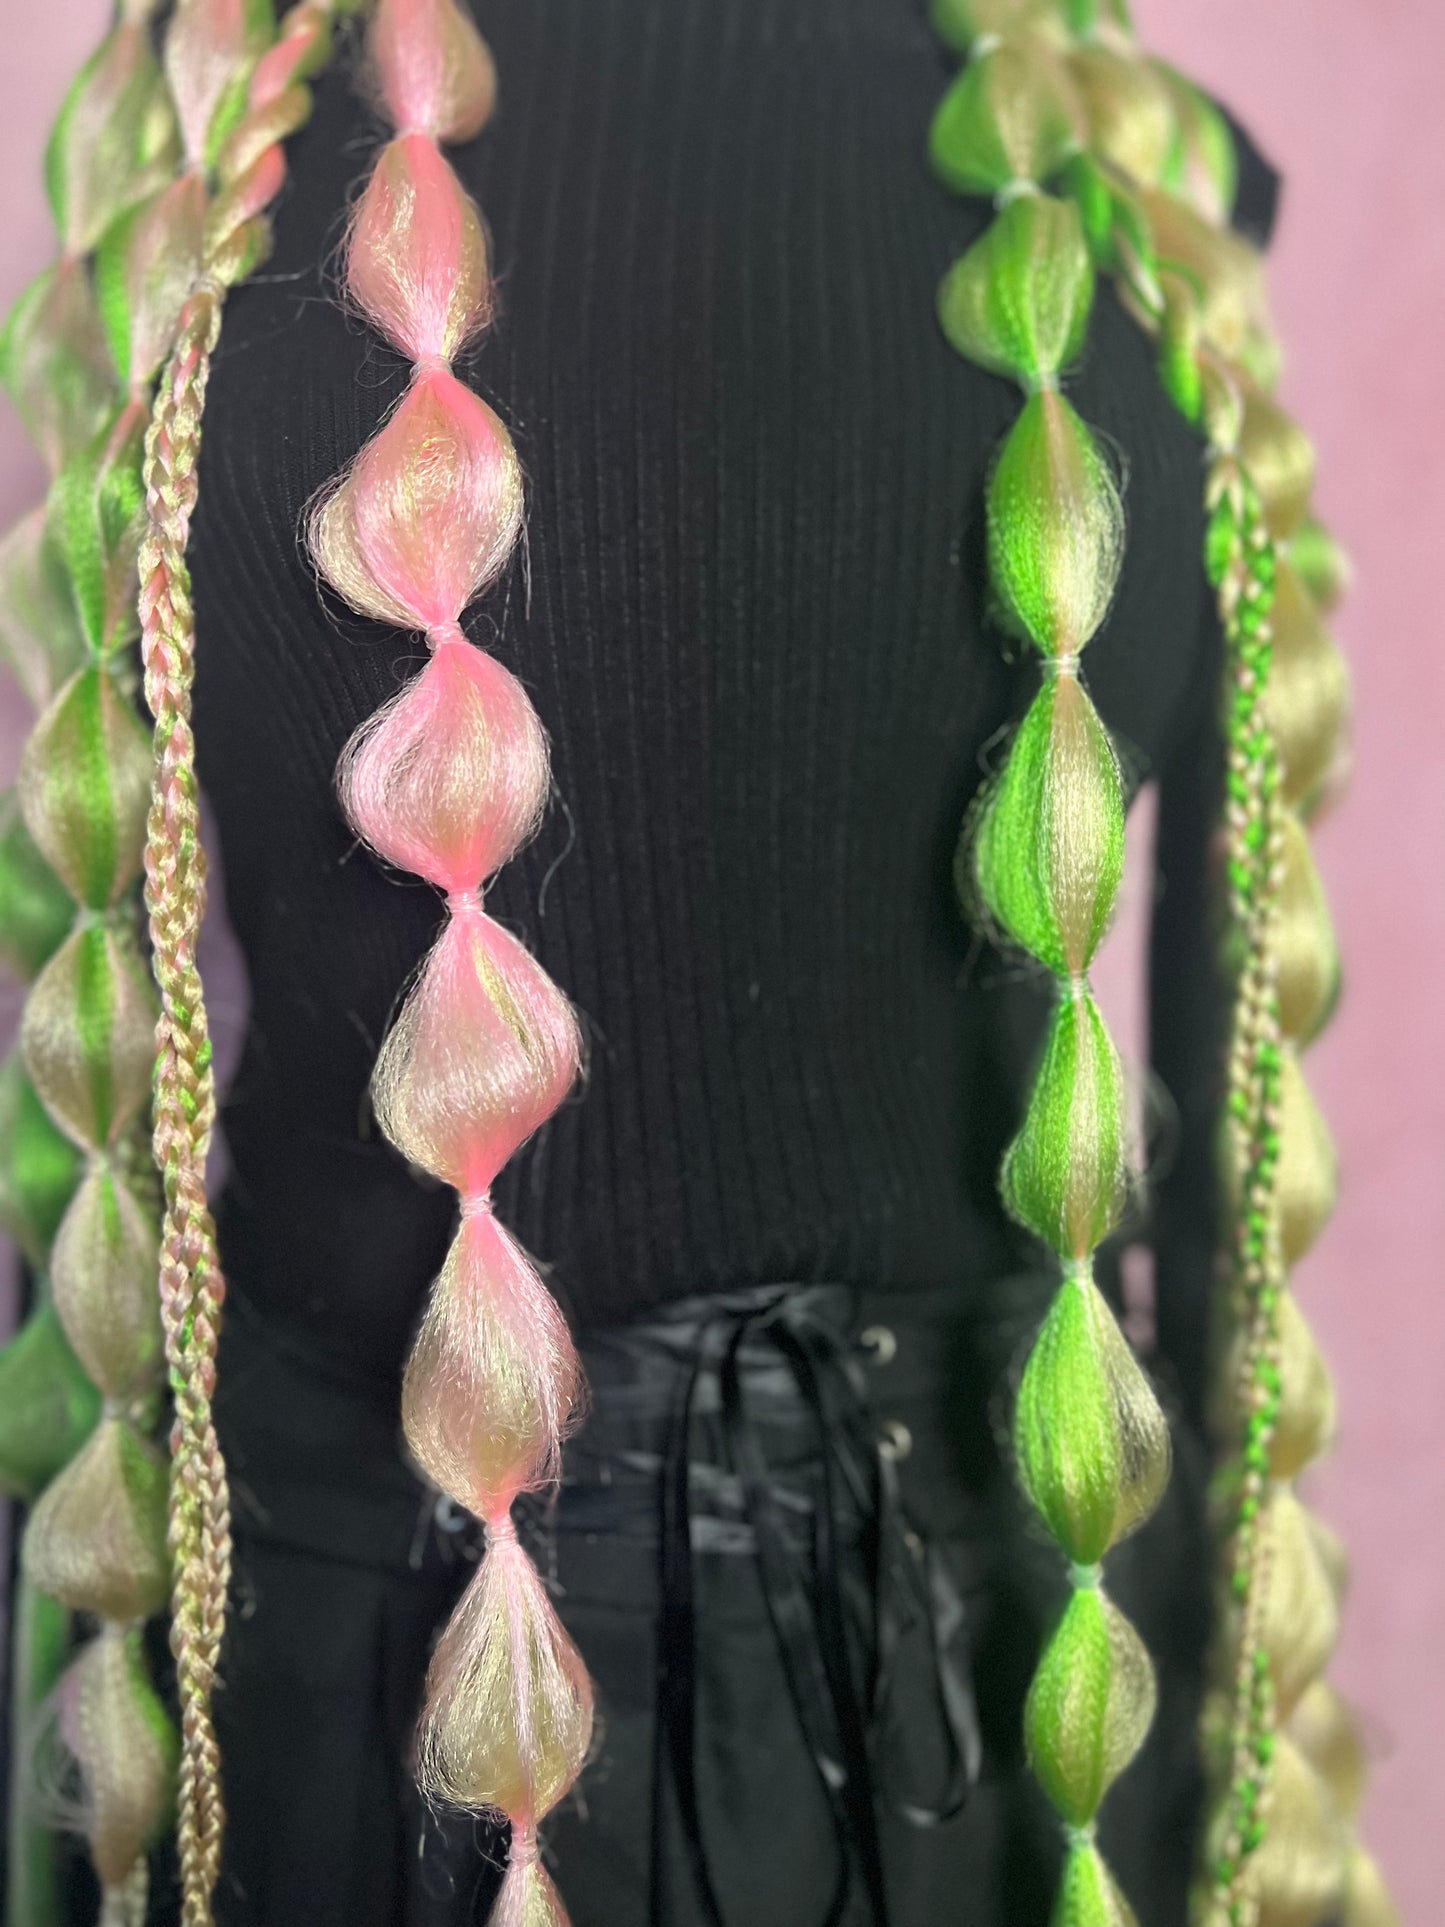 Strawberry Kiwi tie in rave braids